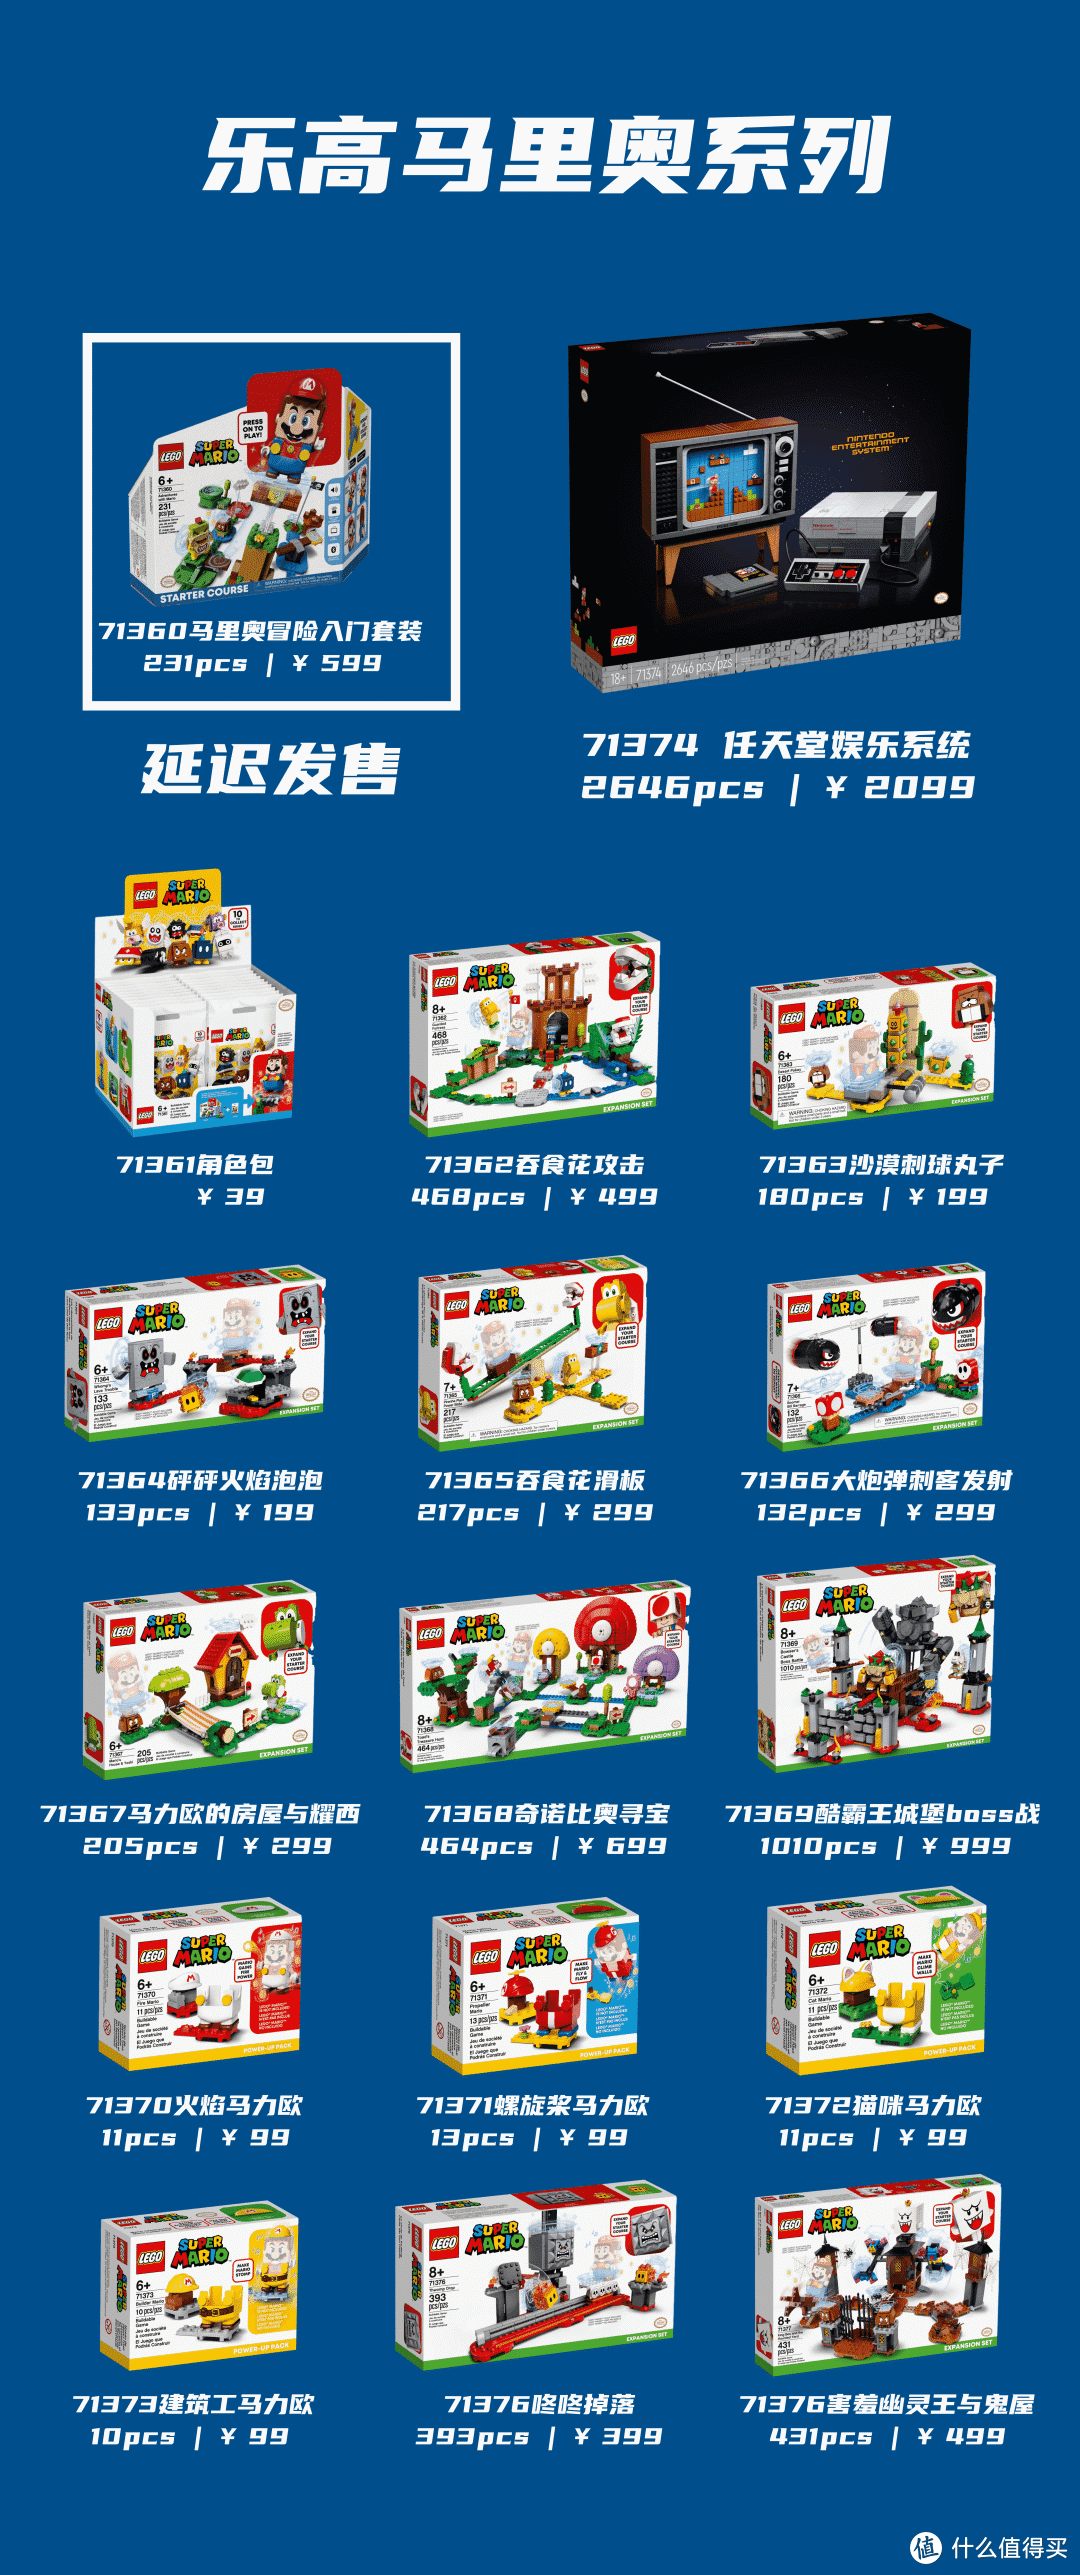 8月大型剁手现场，10个系列40+款乐高新品准备出击！｜ LEGO资讯